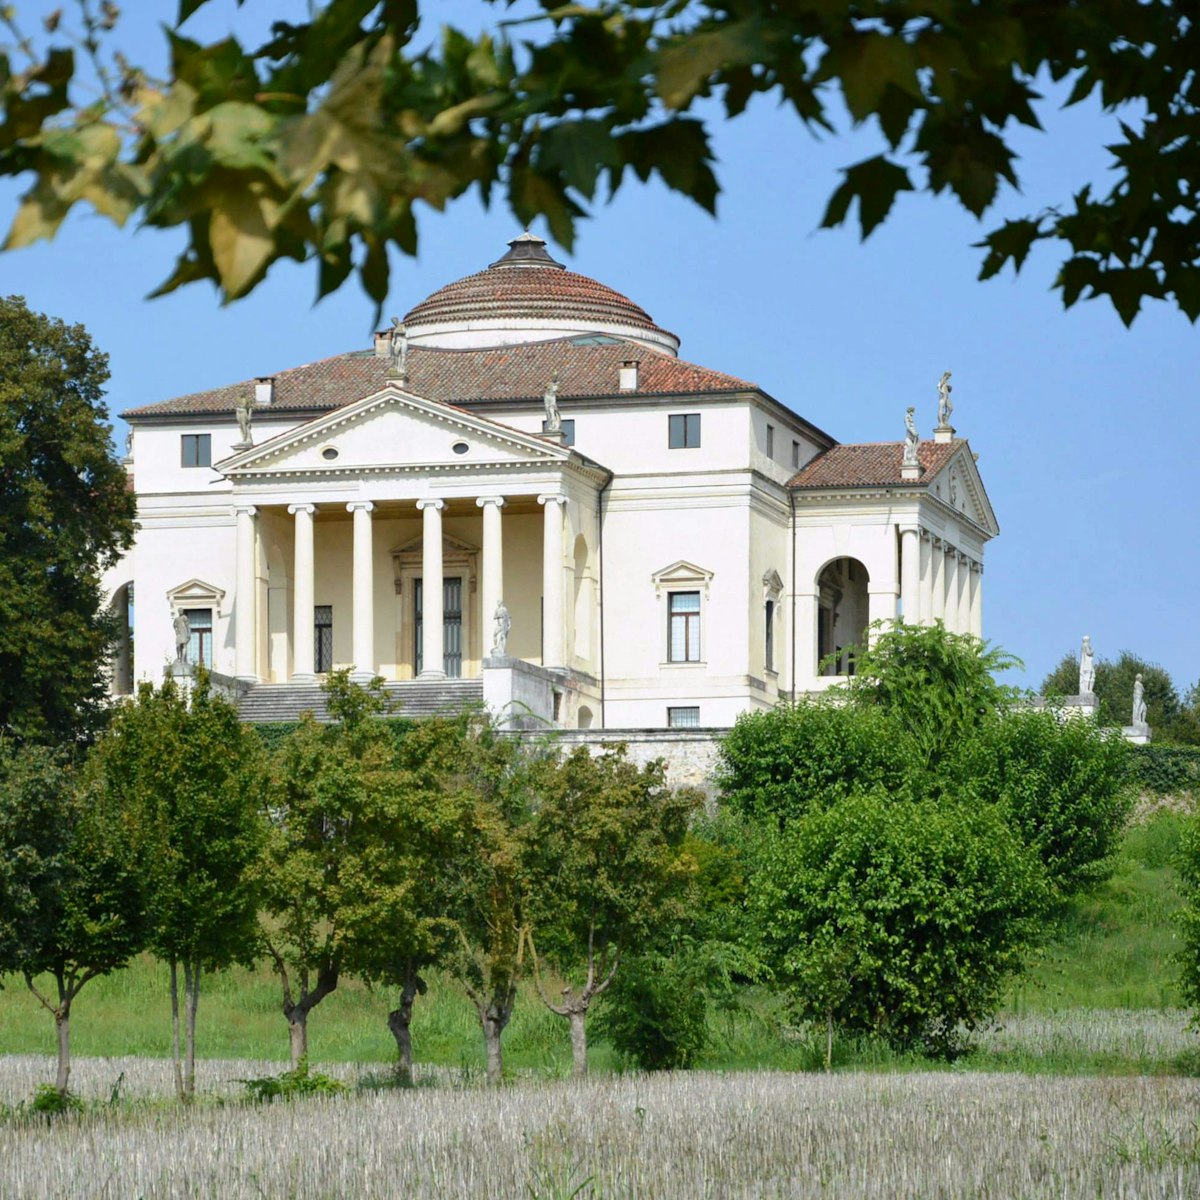 Villa Capra named La Rotonda, designed by Andrea Palladio architect in1591 at Vicenza in Italy.